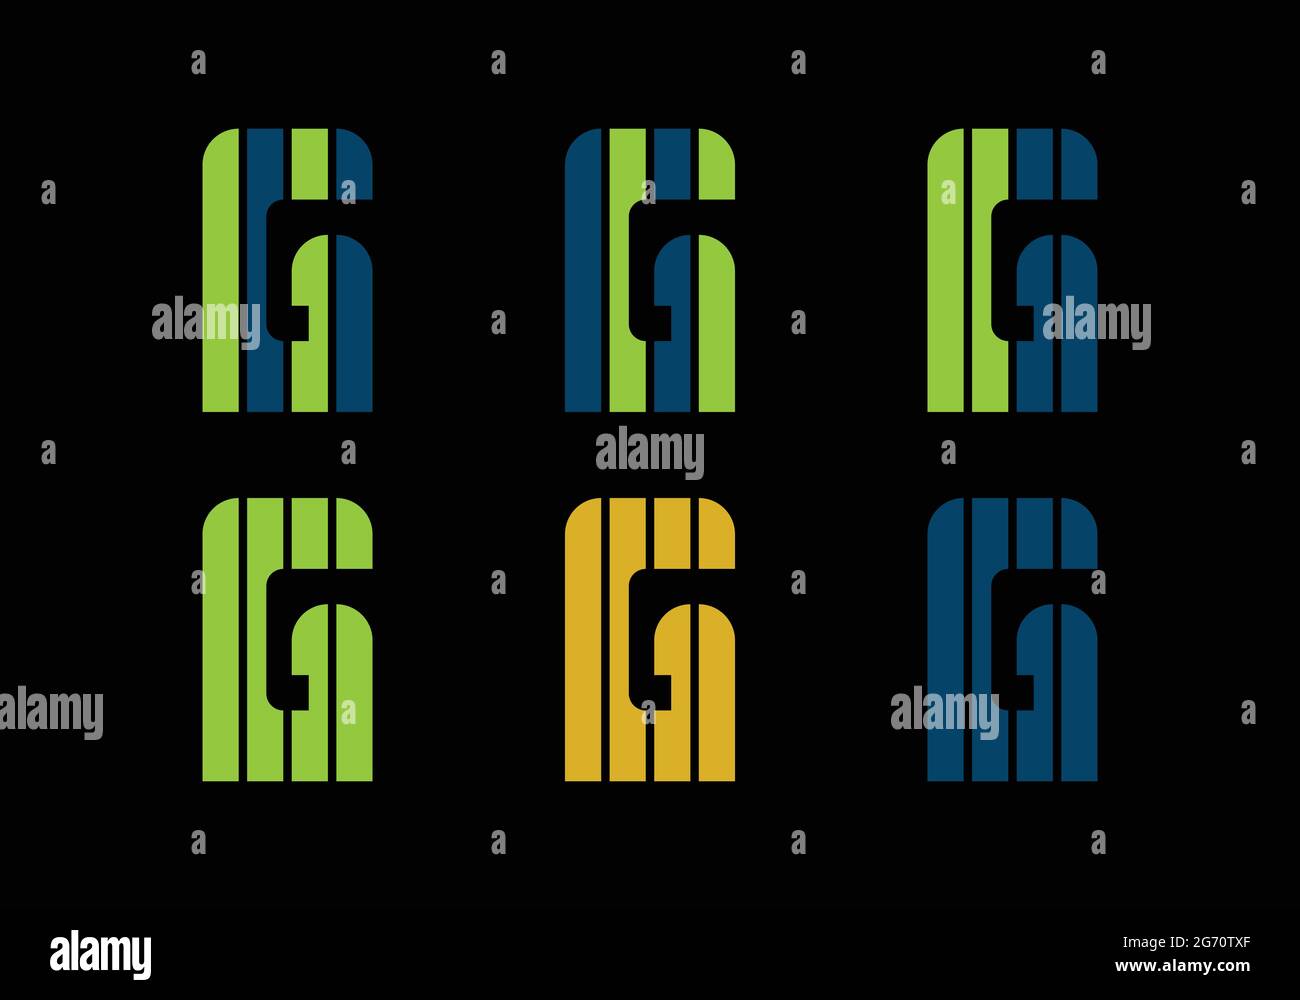 Initial Monogram Letter G Logo Design Vector Template G Letter Logo Design G Letter for Your Brand Stock Vector